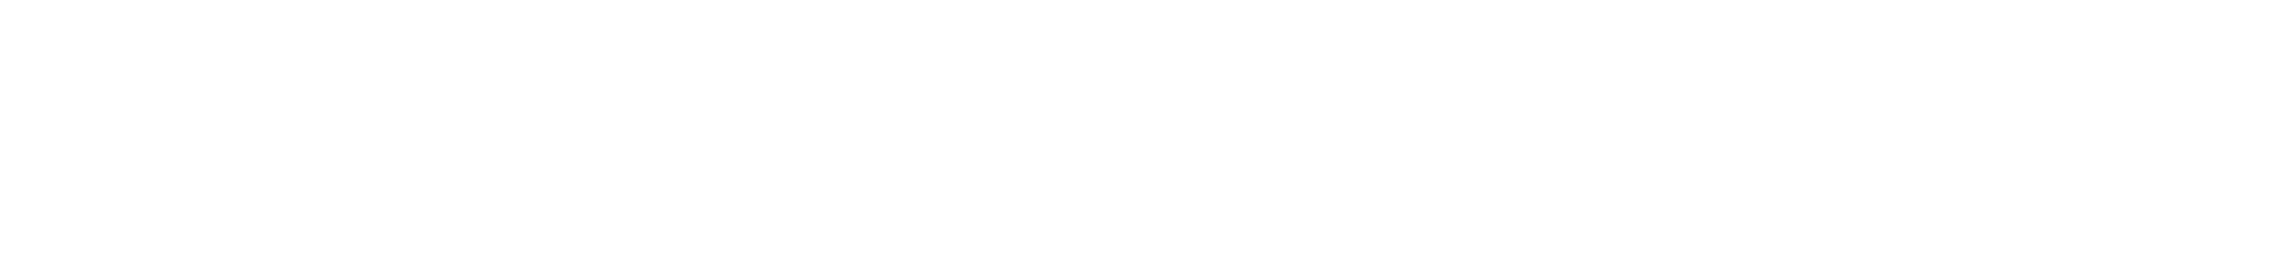 PM logos-04